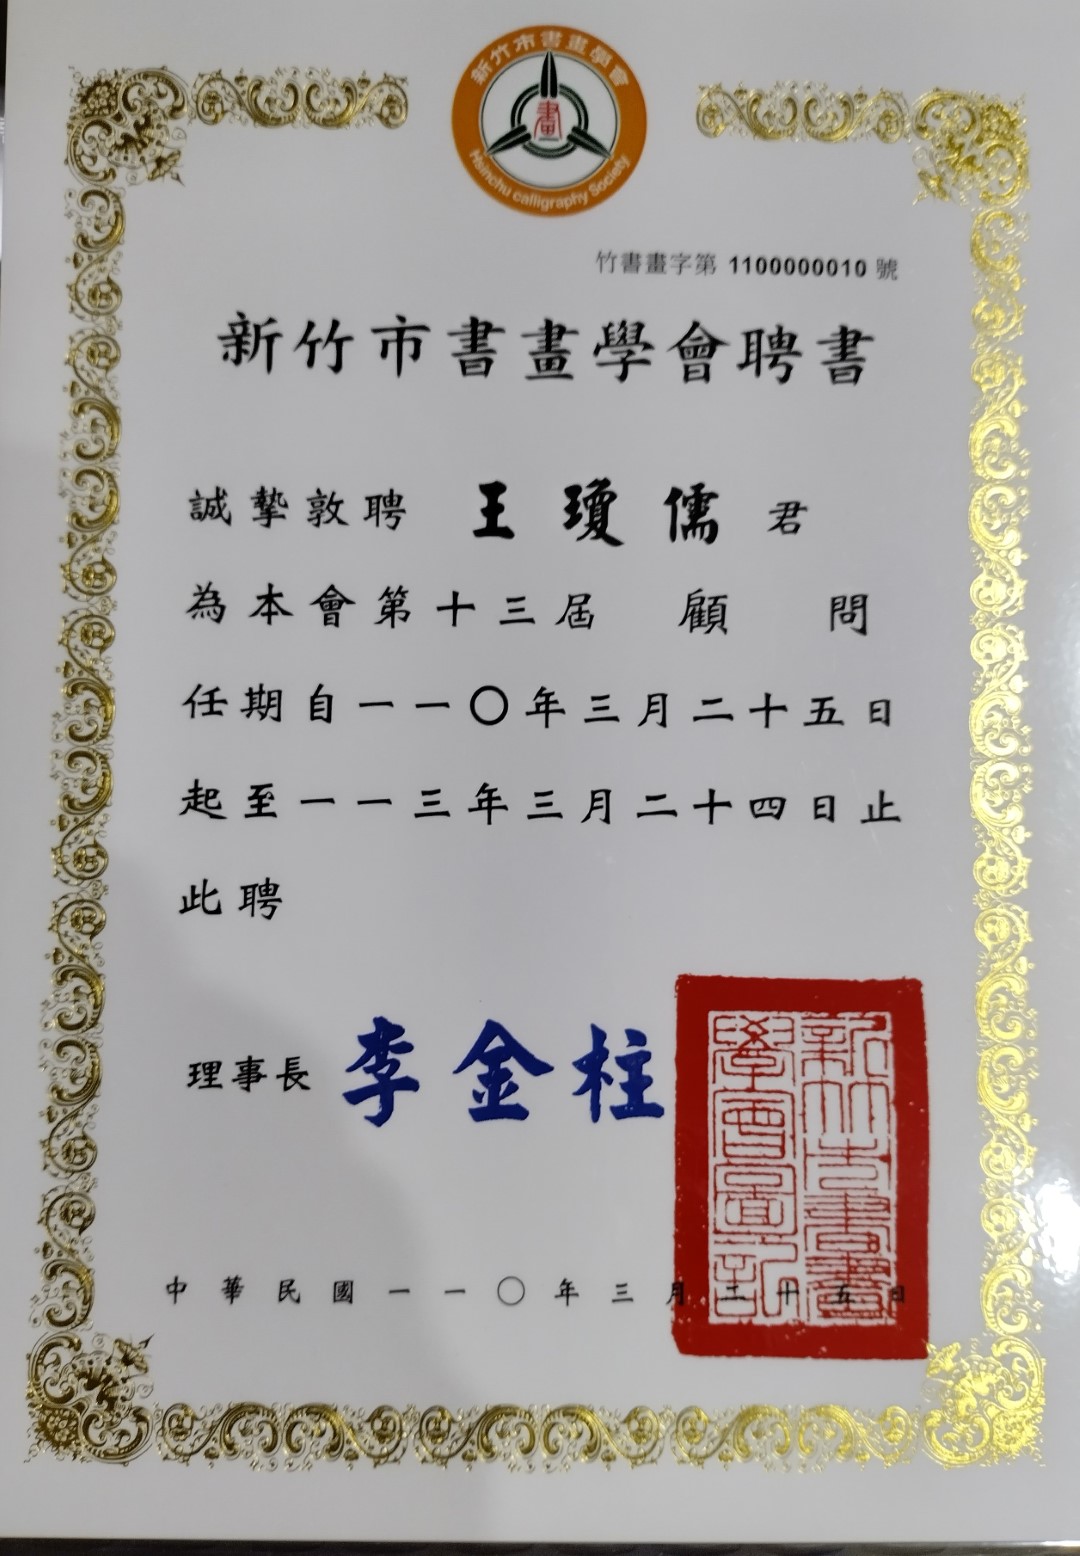 本公司 王瓊儒先生受聘為台灣新竹市書畫學會顧問